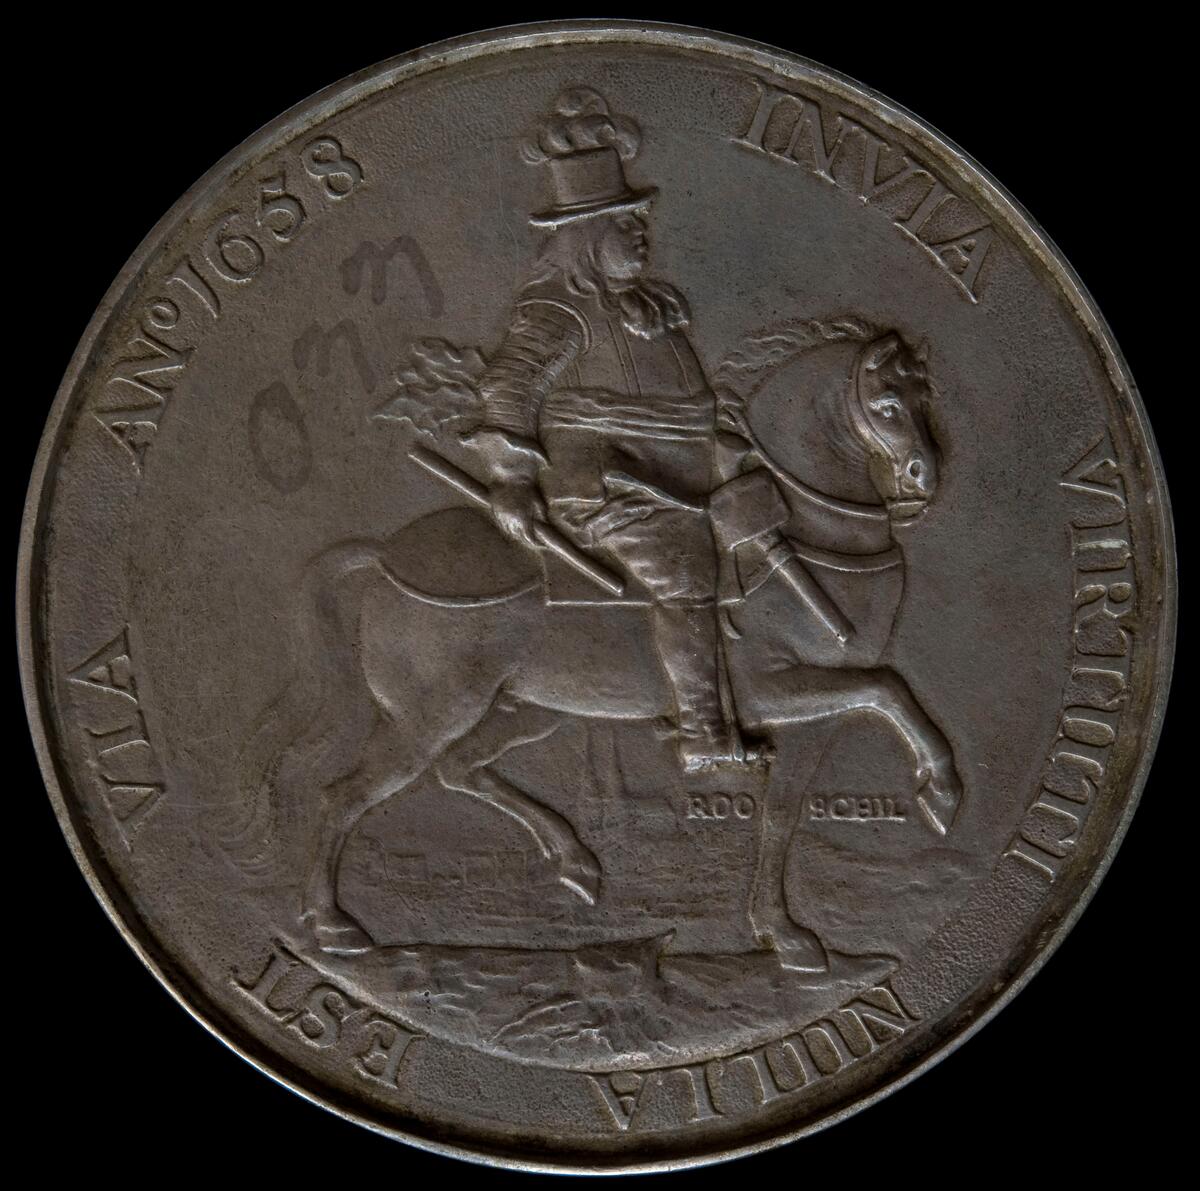 Medalj Karl X Gustav. Härnösands Allmänna Läroverk

